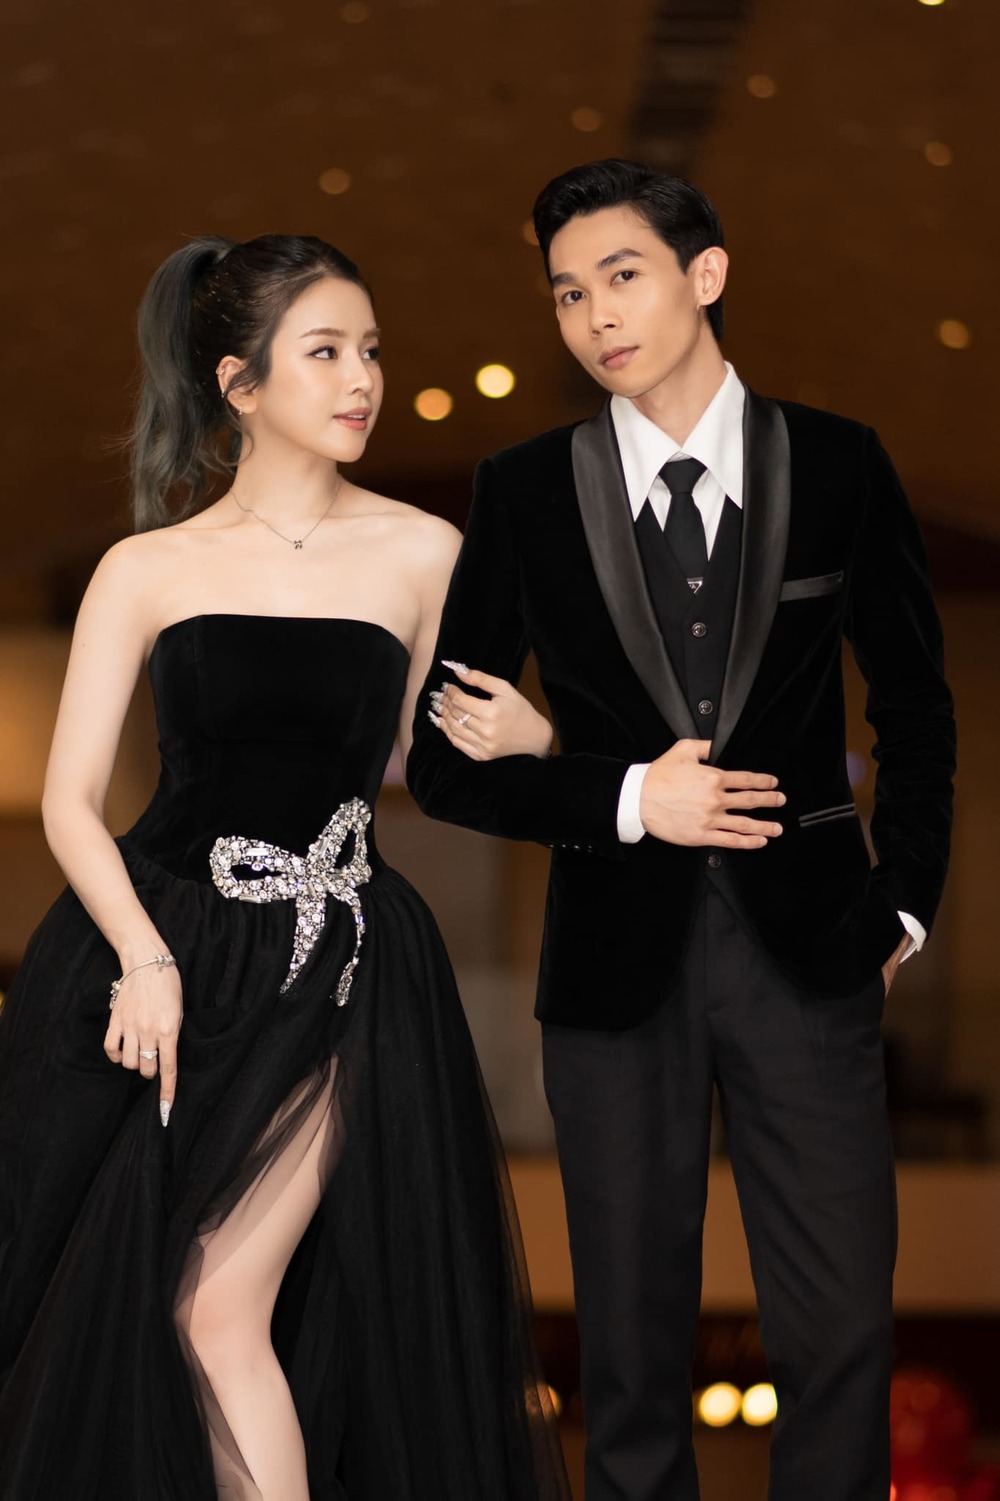  
Quán quân Cười Xuyên Việt khéo mặc vest đen đồng điệu với bạn gái. (Ảnh: FB DJ Mie)